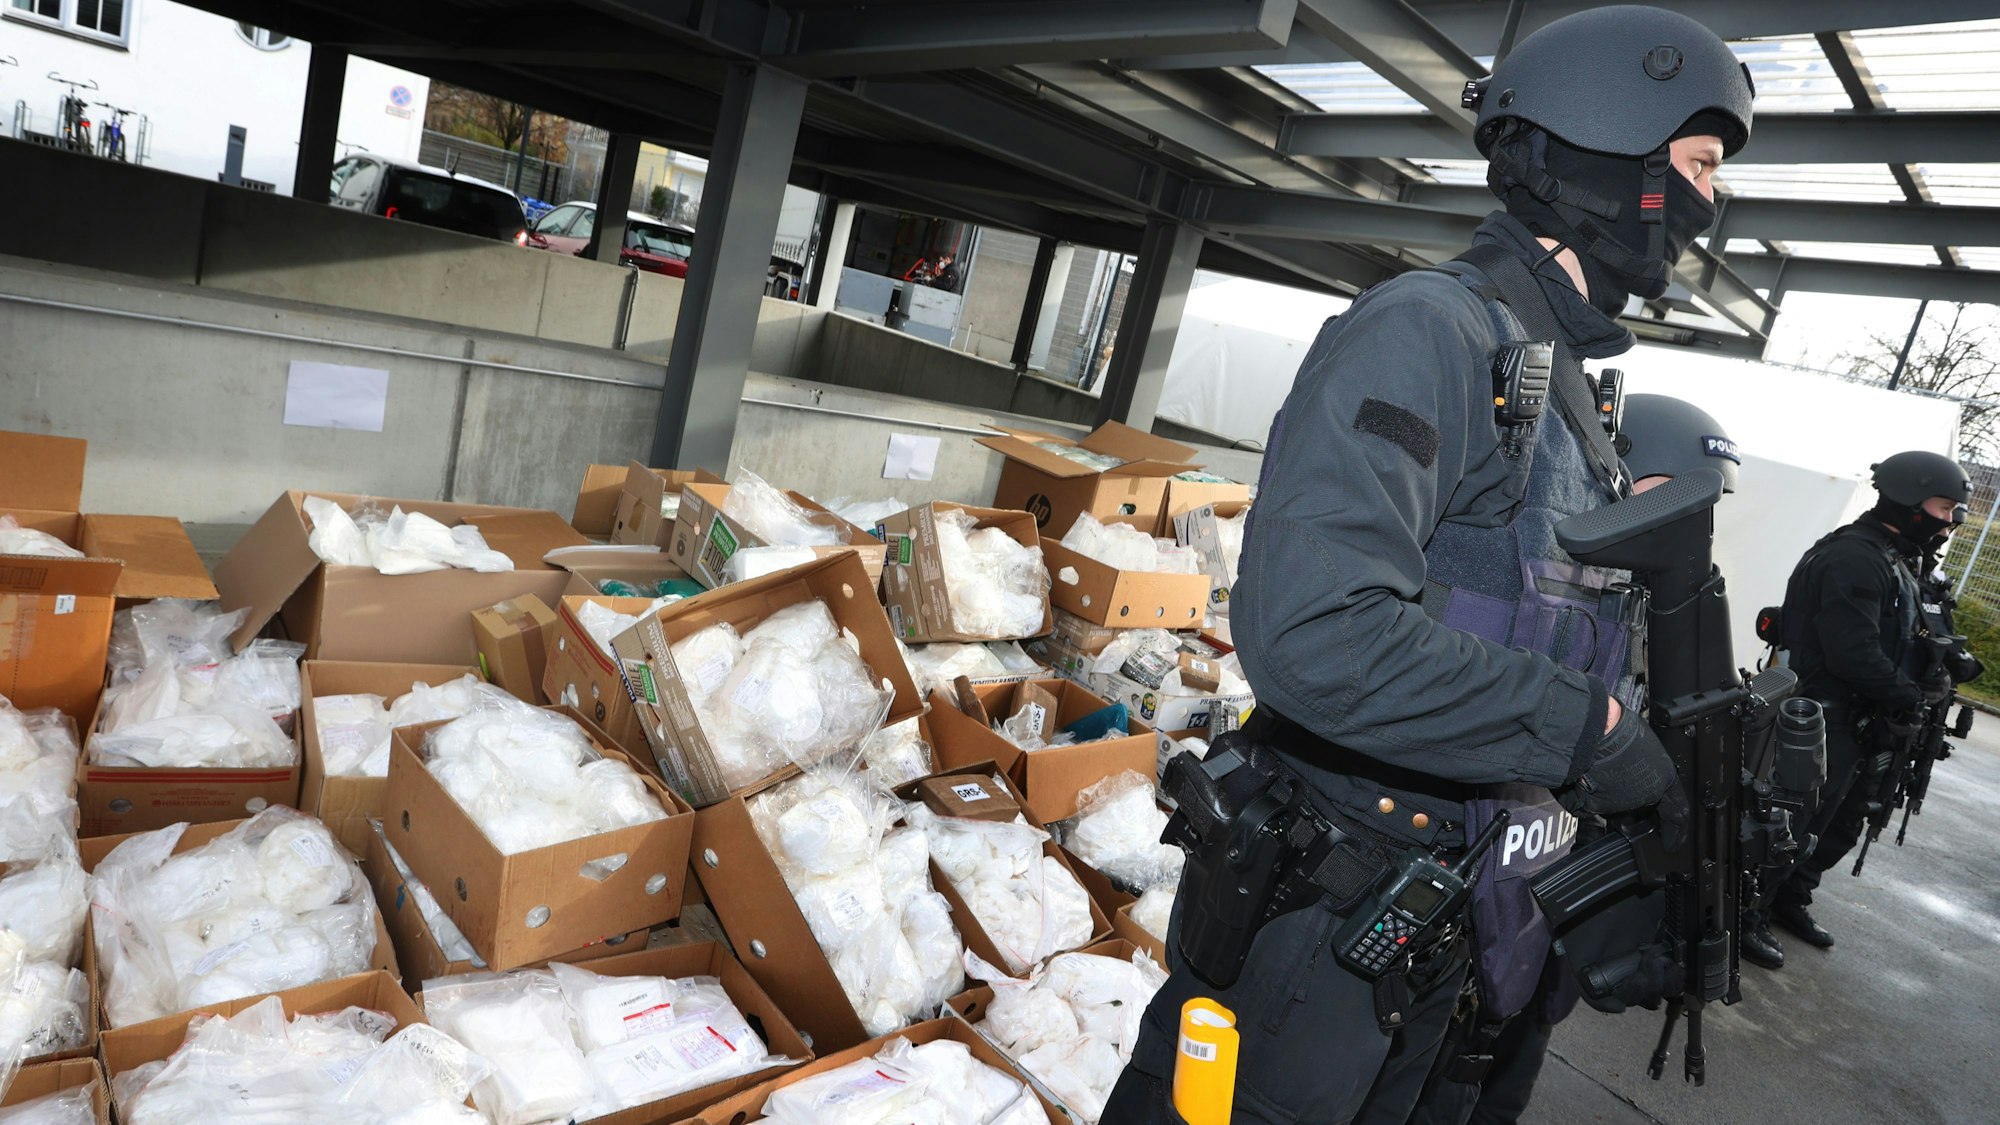 Polizisten der bayerischen Bereitschaftspolizei stehen vor rund 1,5 Tonnen Kokain, die zum Abtransport bereitliegen.